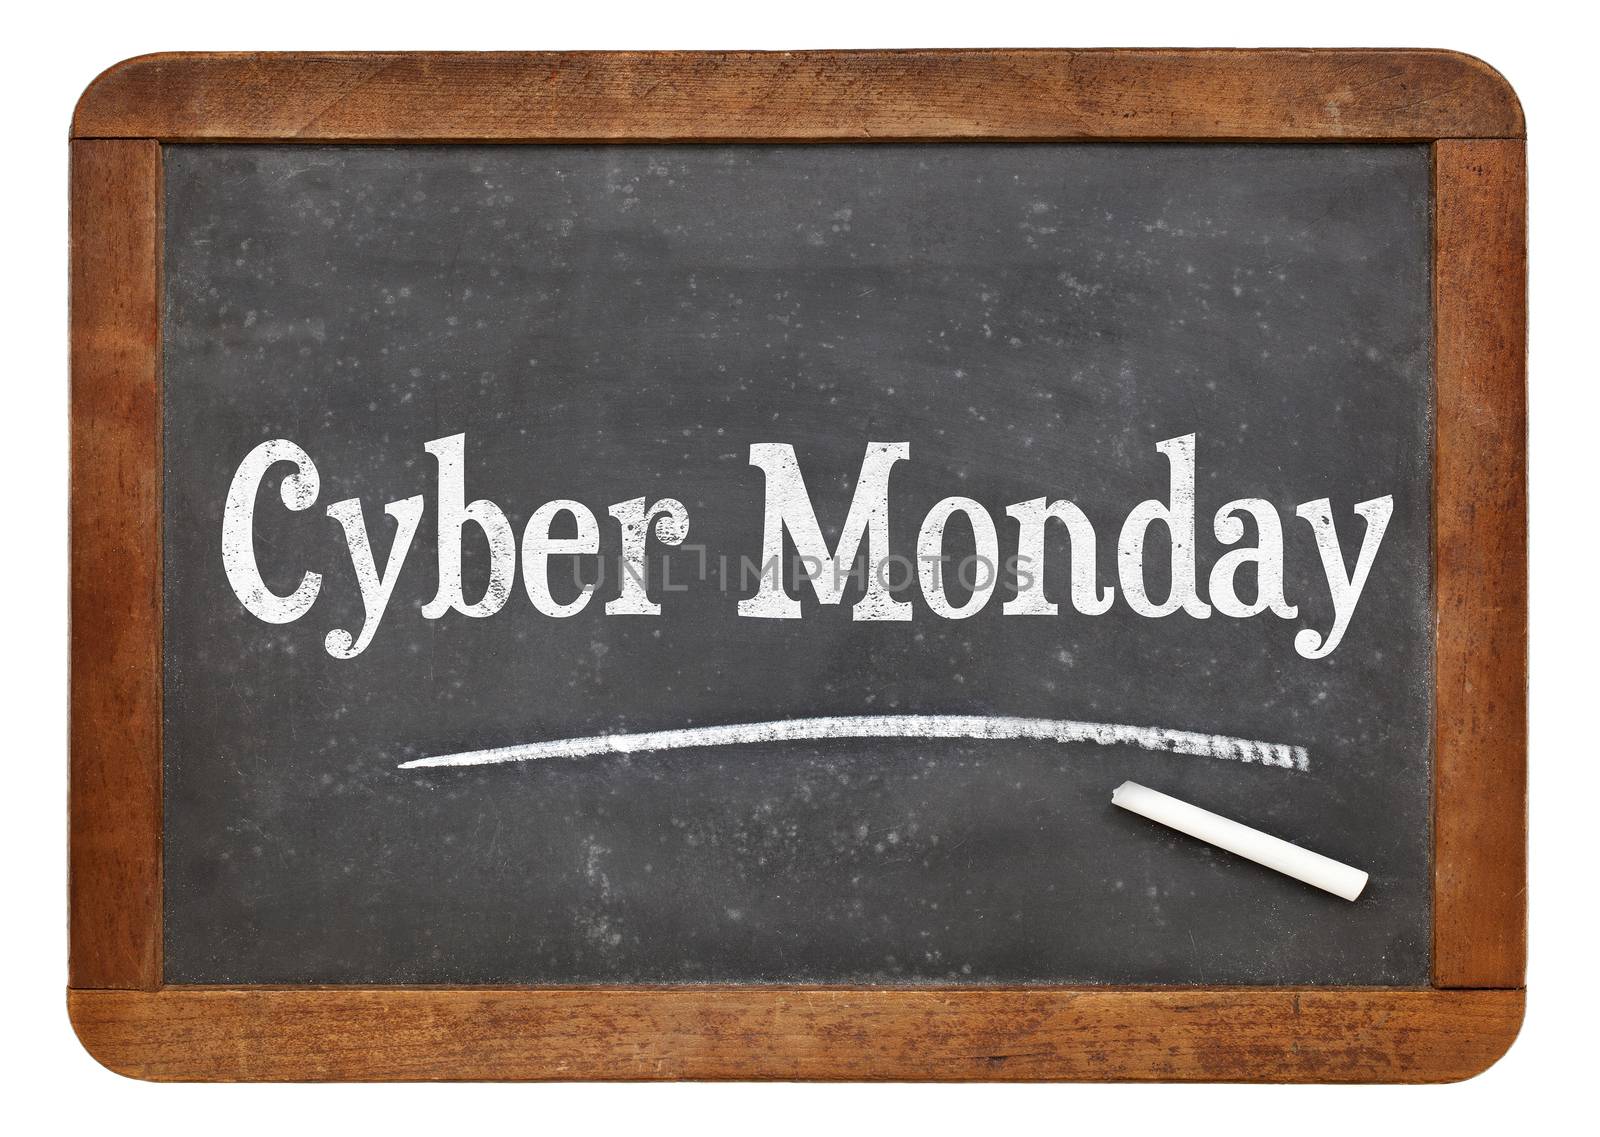 Cyber Monday blackboard sign by PixelsAway